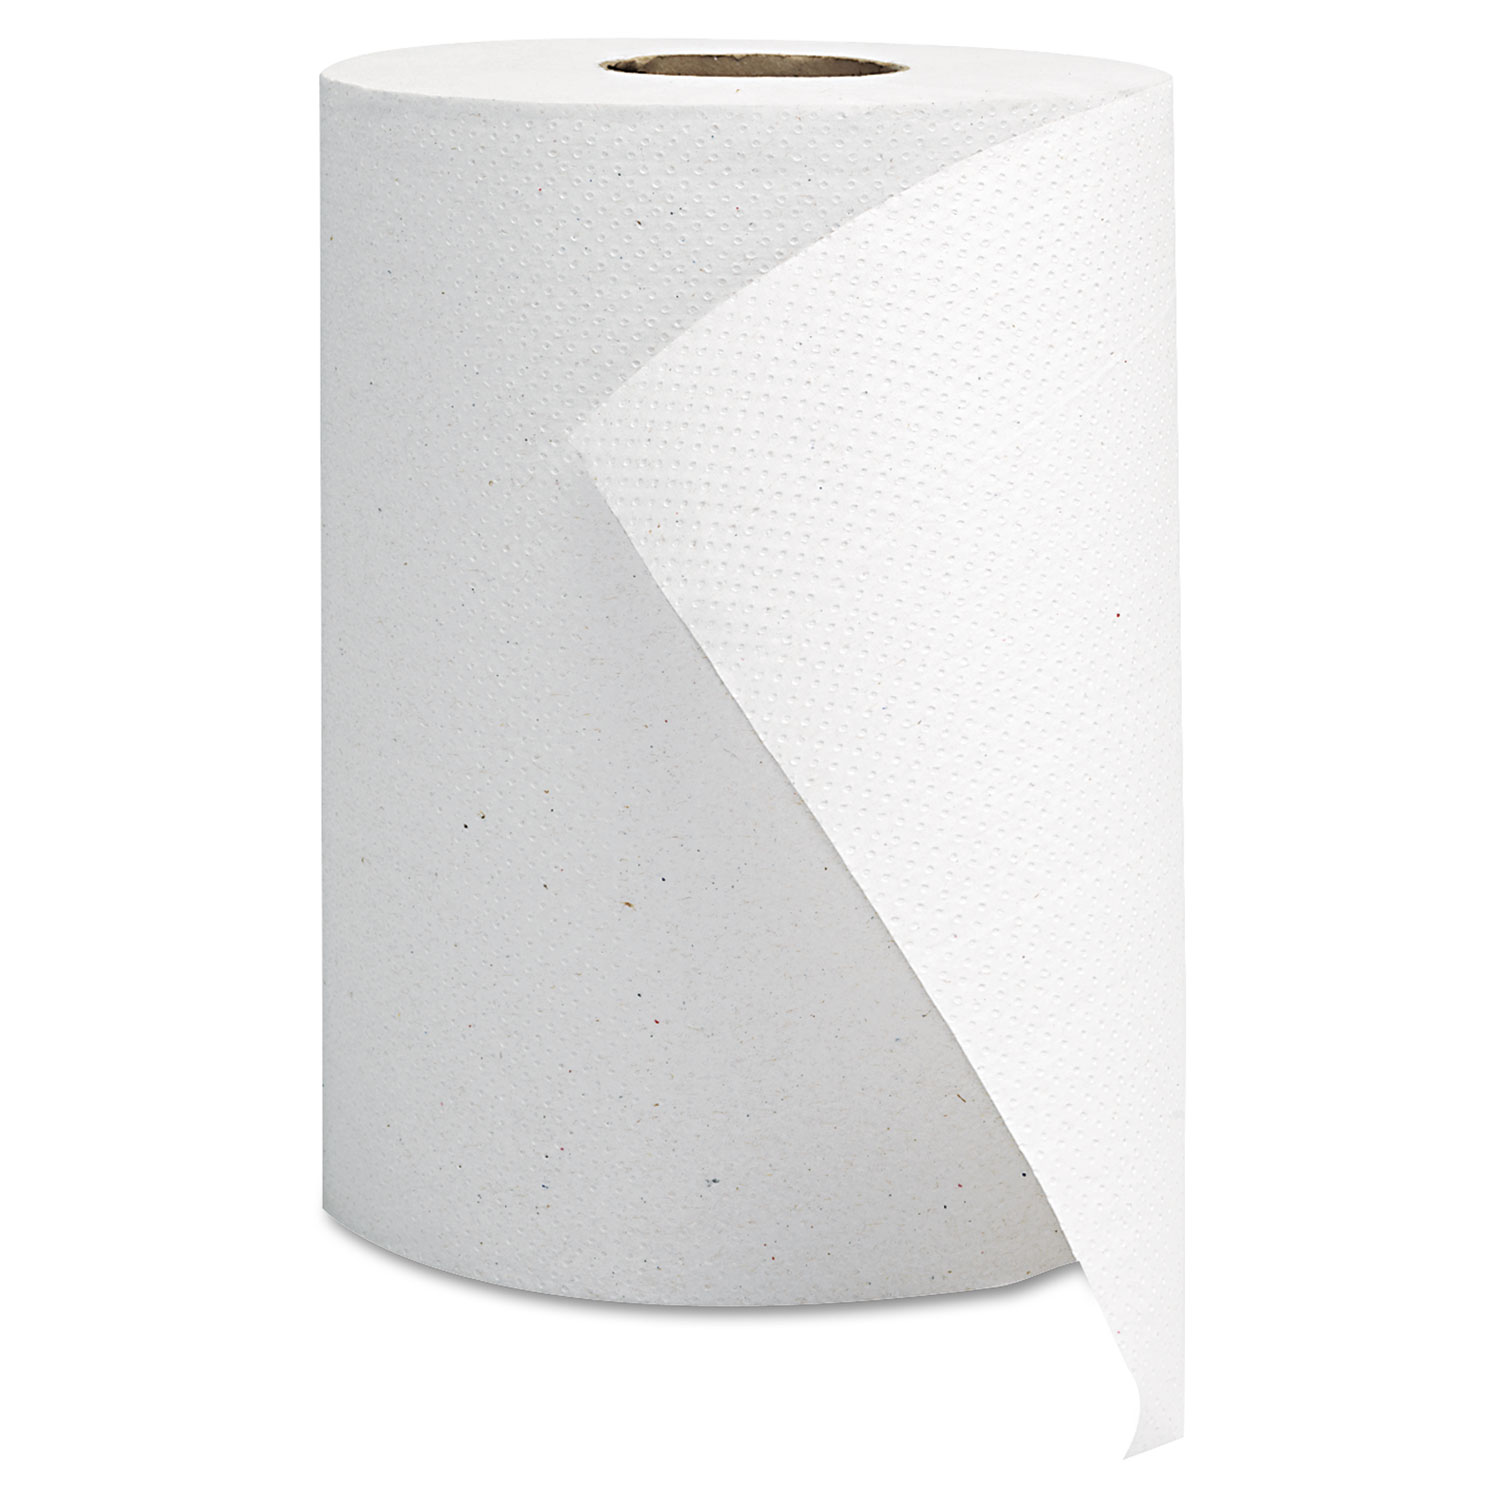 GEN Hardwound Roll Towels - White, 8" x 350', 12/Case